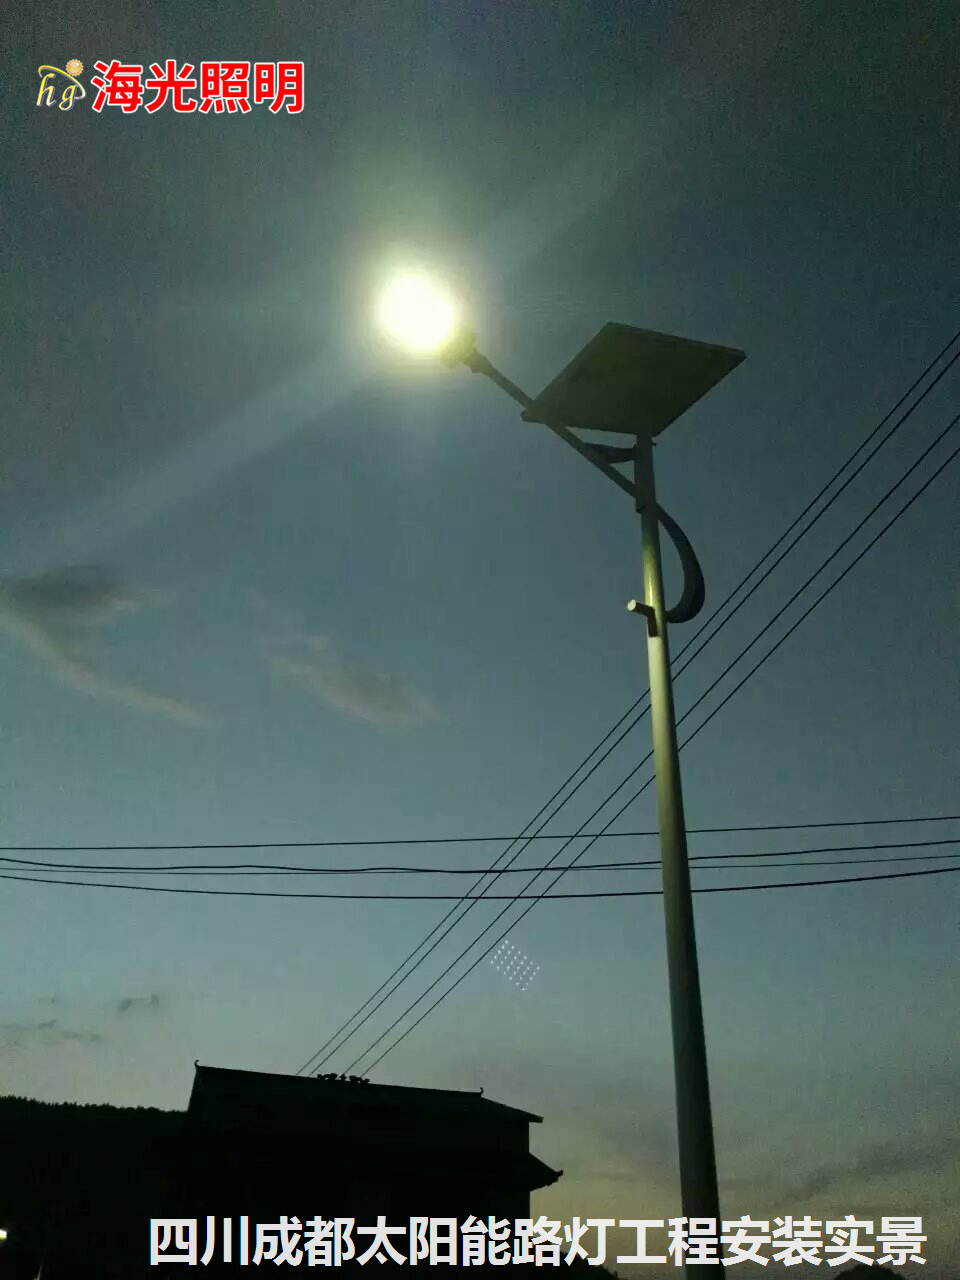 四川成都村村通道路太阳能LED路灯安装工程项目